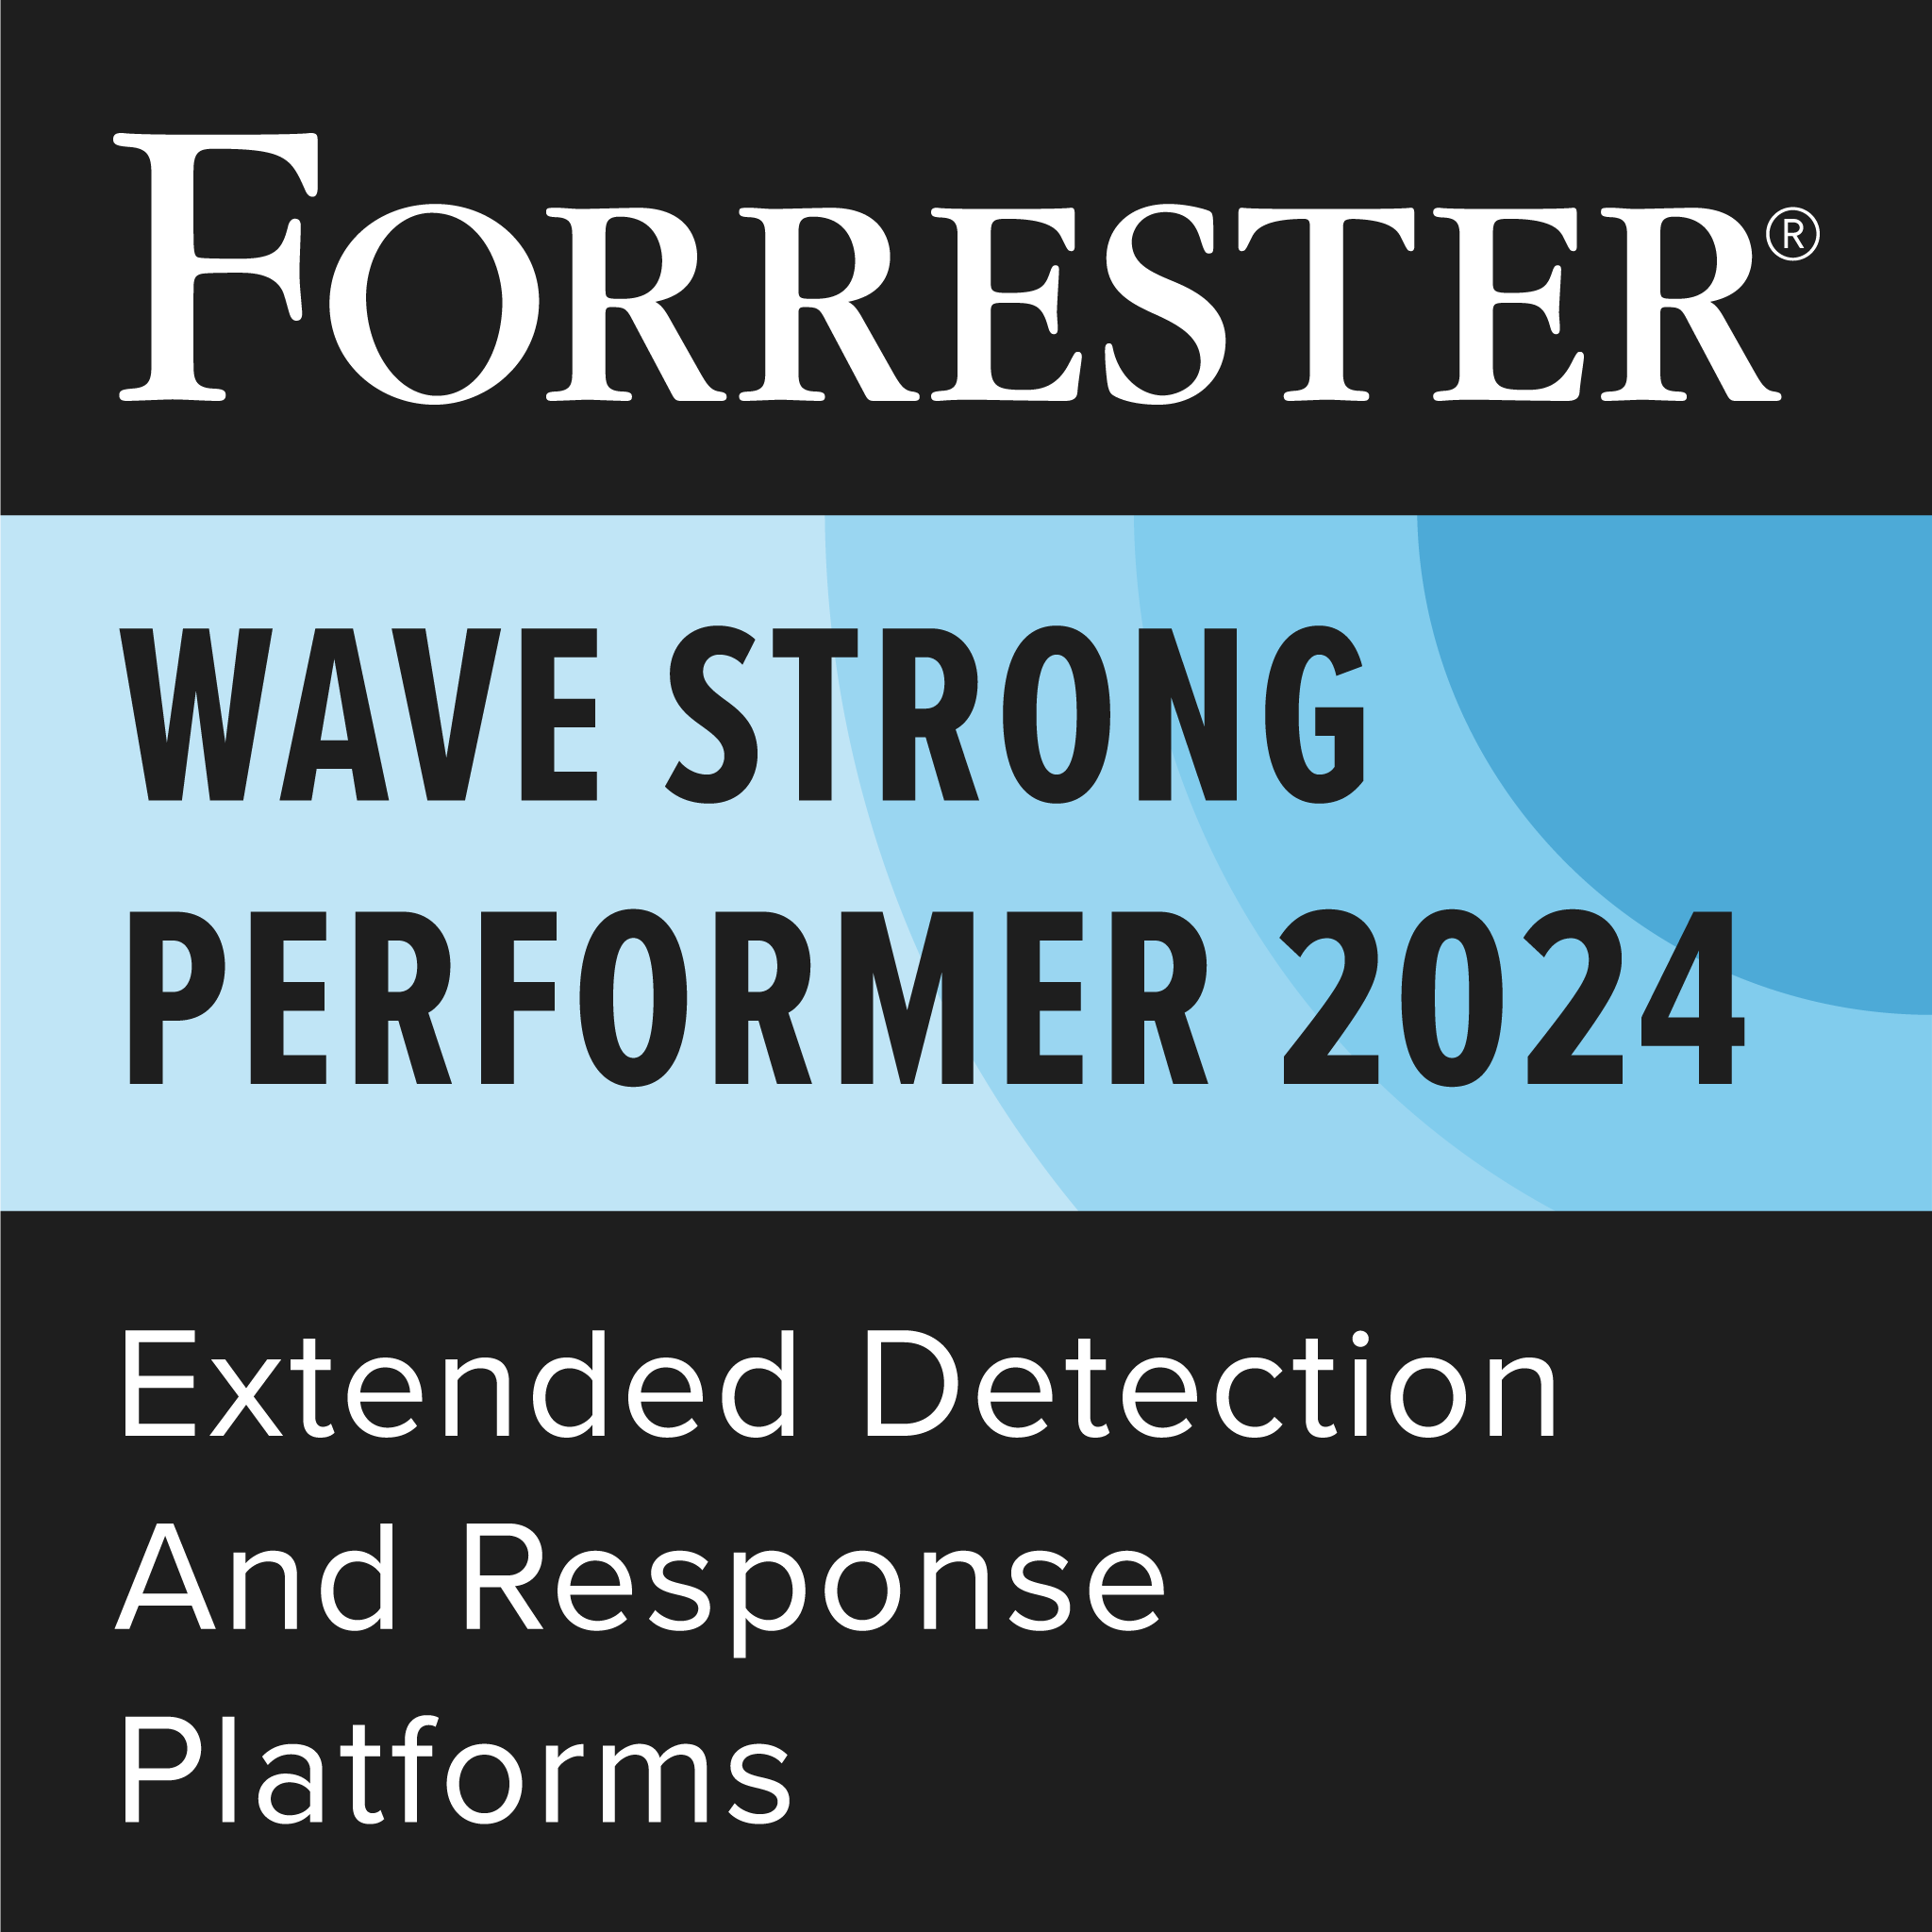 Forrester Wave Strong Performer 2024